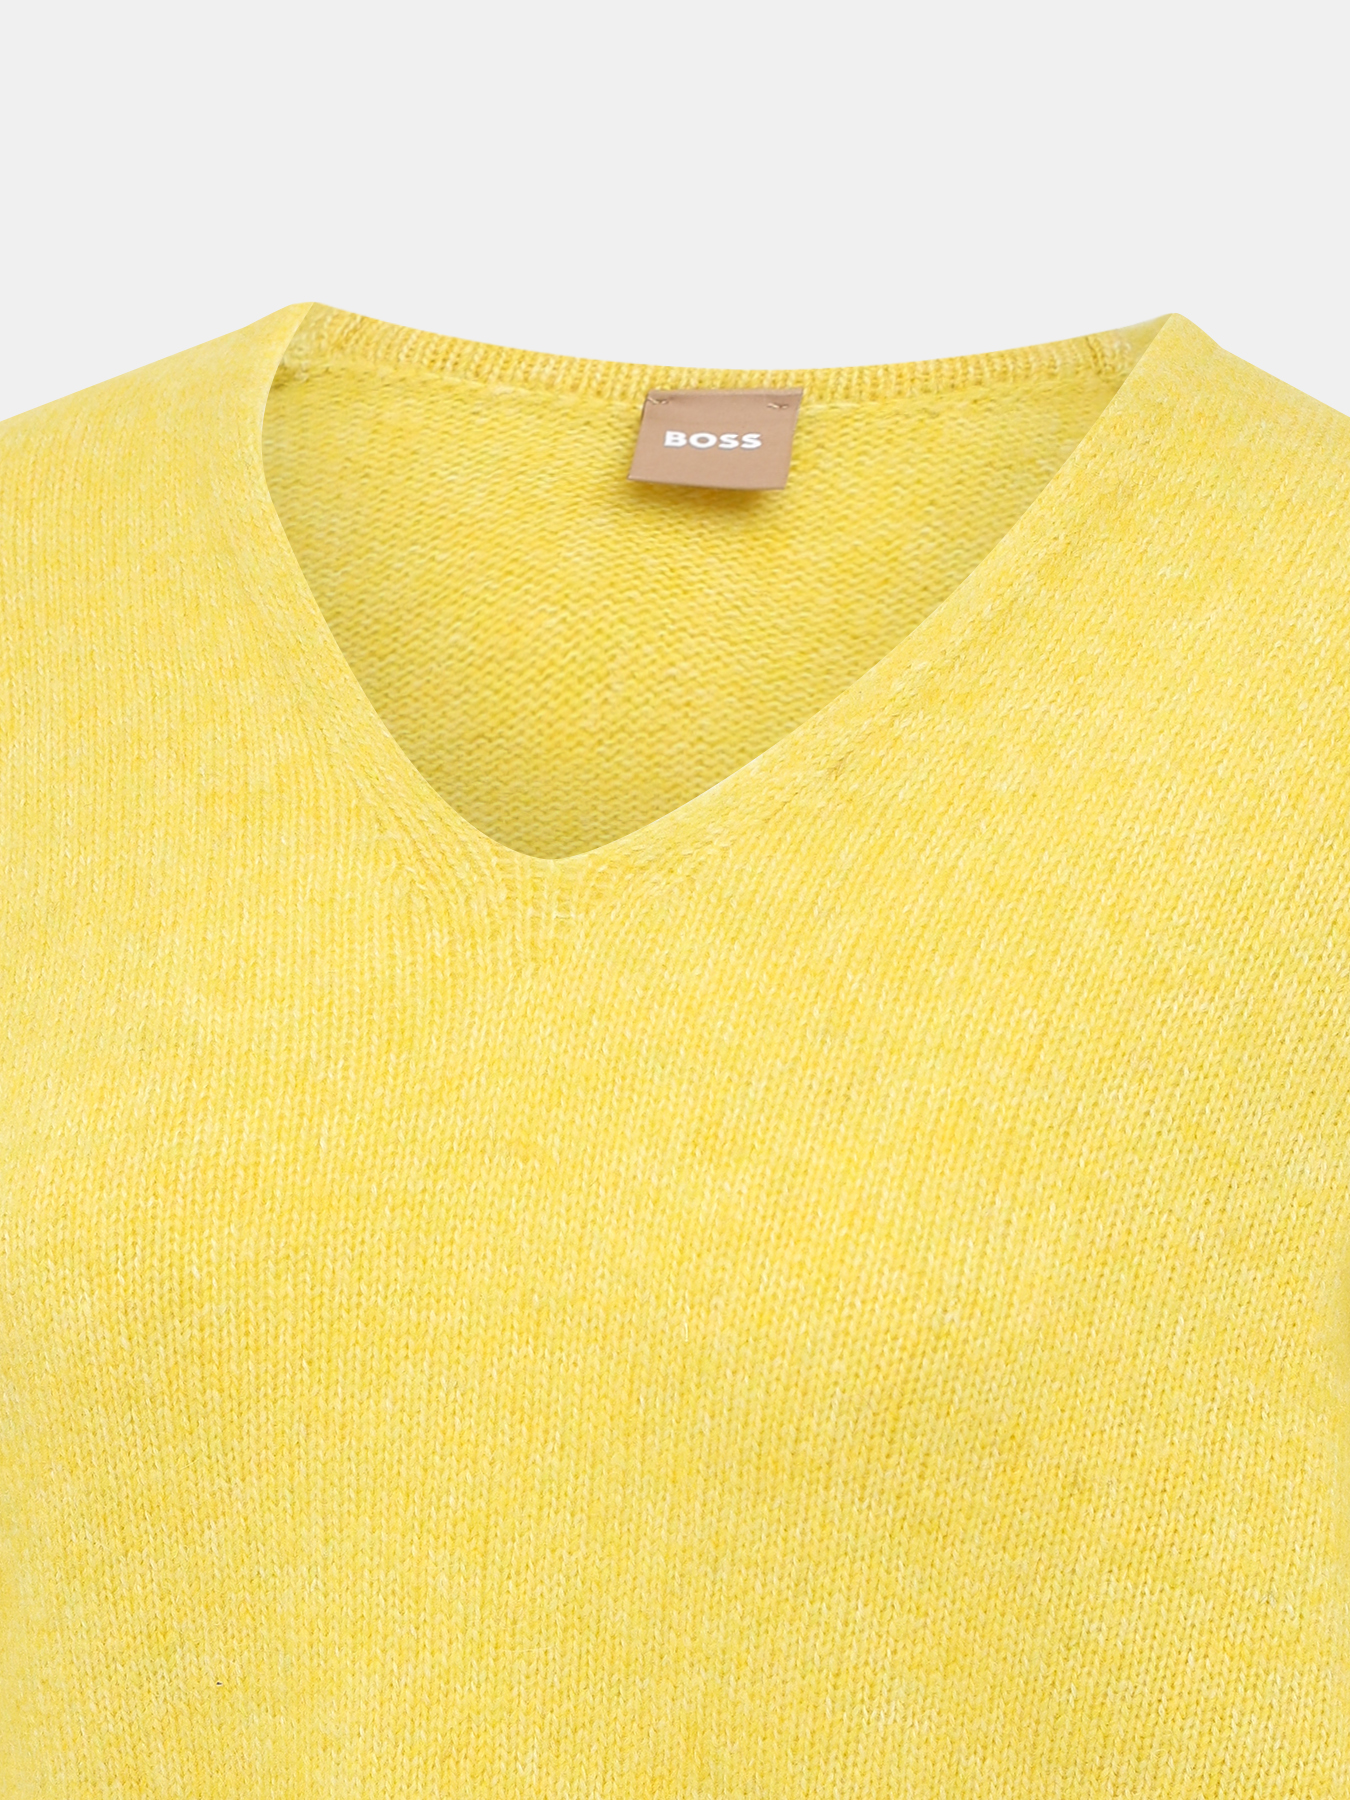 Пуловер Fondianan BOSS 437016-043, цвет желтый, размер 44-46 - фото 3